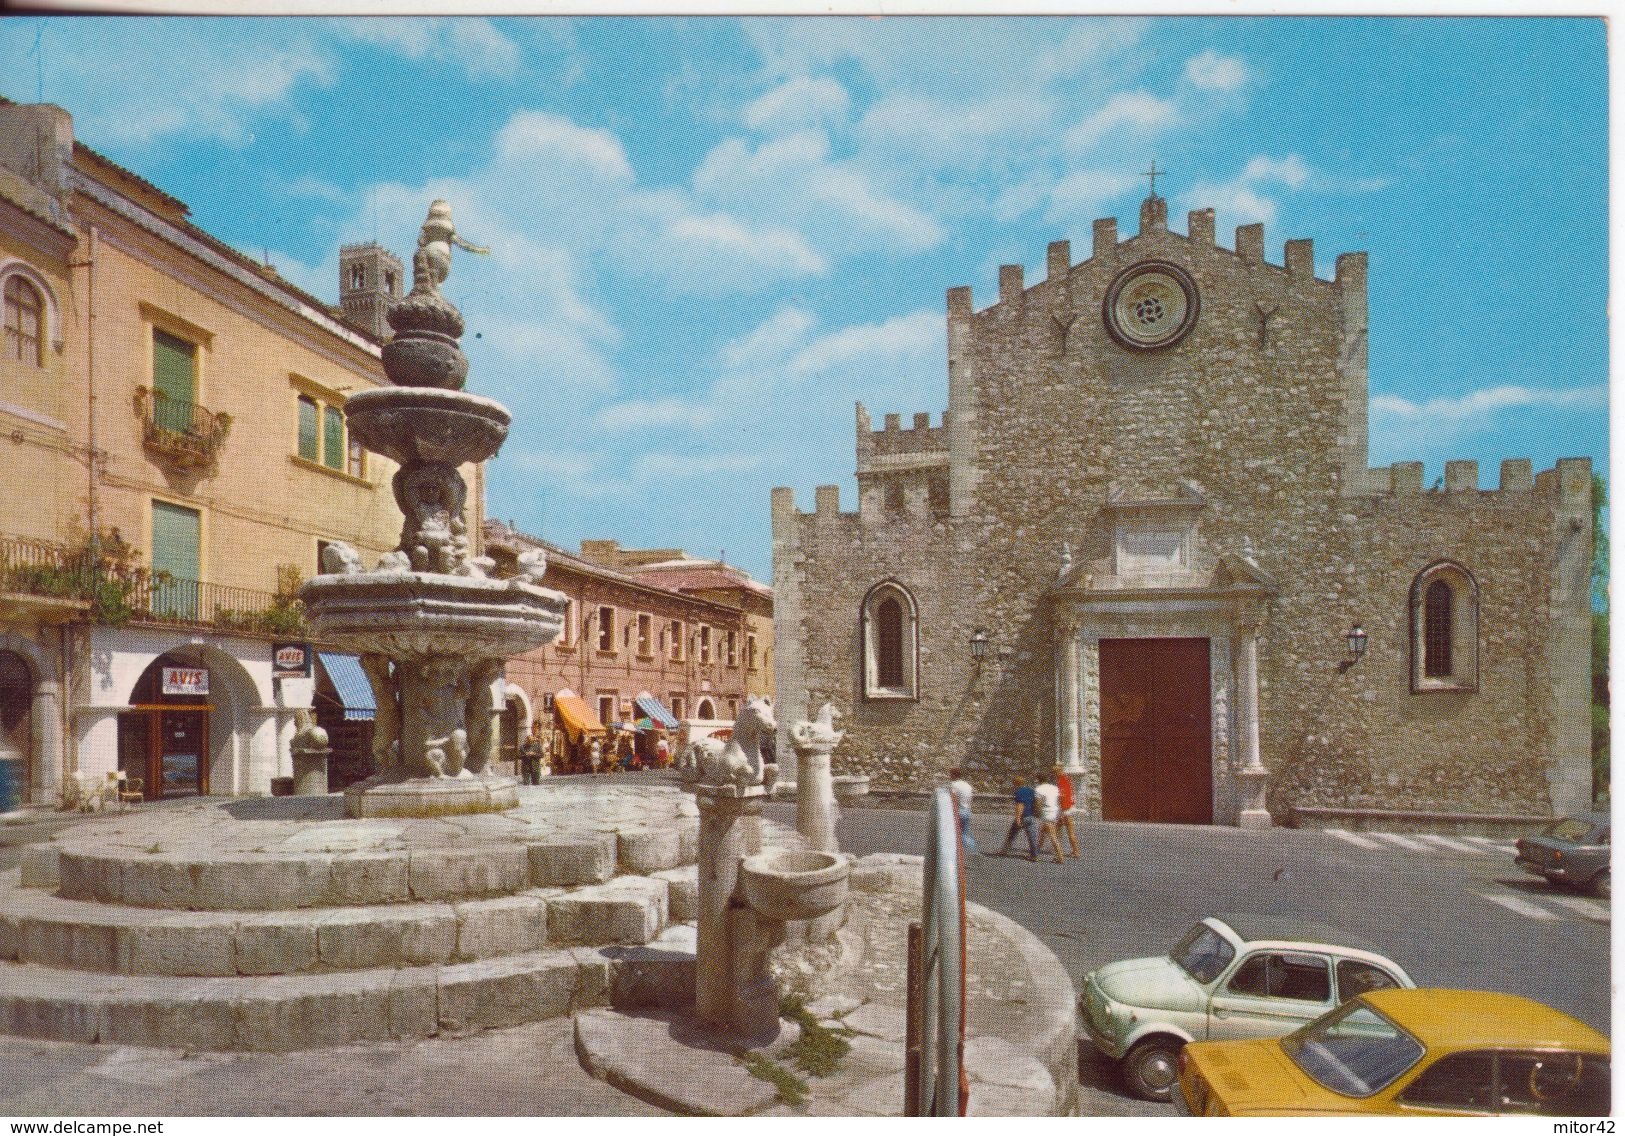 170-Taormina-Messina-Sicilia-Piazza Duomo Animata Co Auto D'epoca-Religione-Chiese-Nuova-Nouveau-New - Mazara Del Vallo